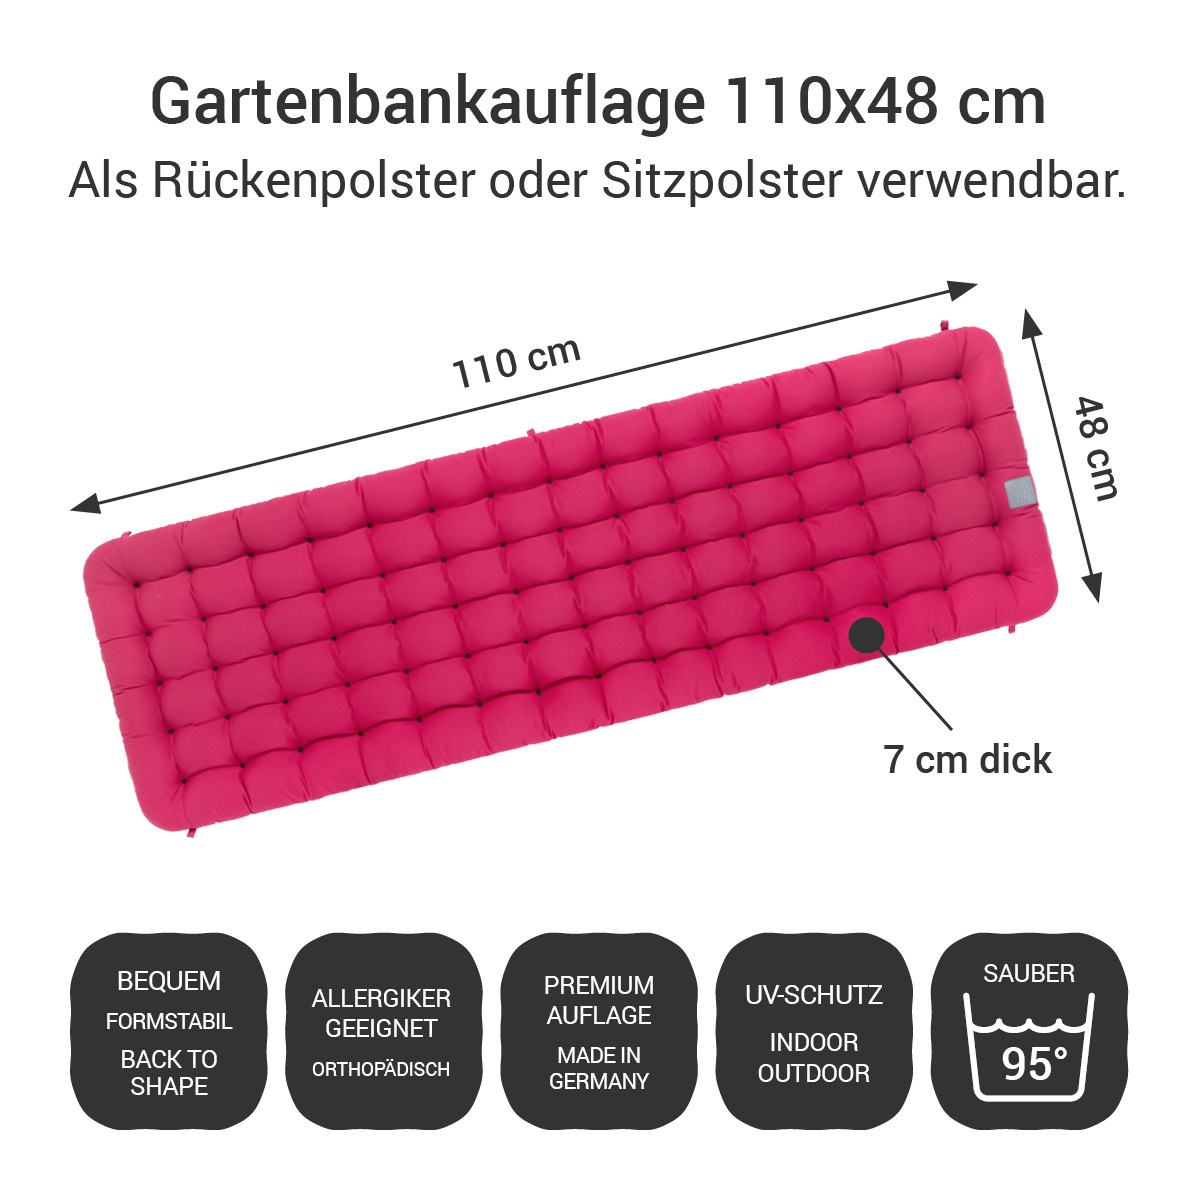 Gartenbank Auflagen (2tlg.) pink 110x48 cm / 110 x 50 cm | bequem & orthopädisch, komplett im Ganzen waschbar bis 95°C, wetterfest, Made in Germany